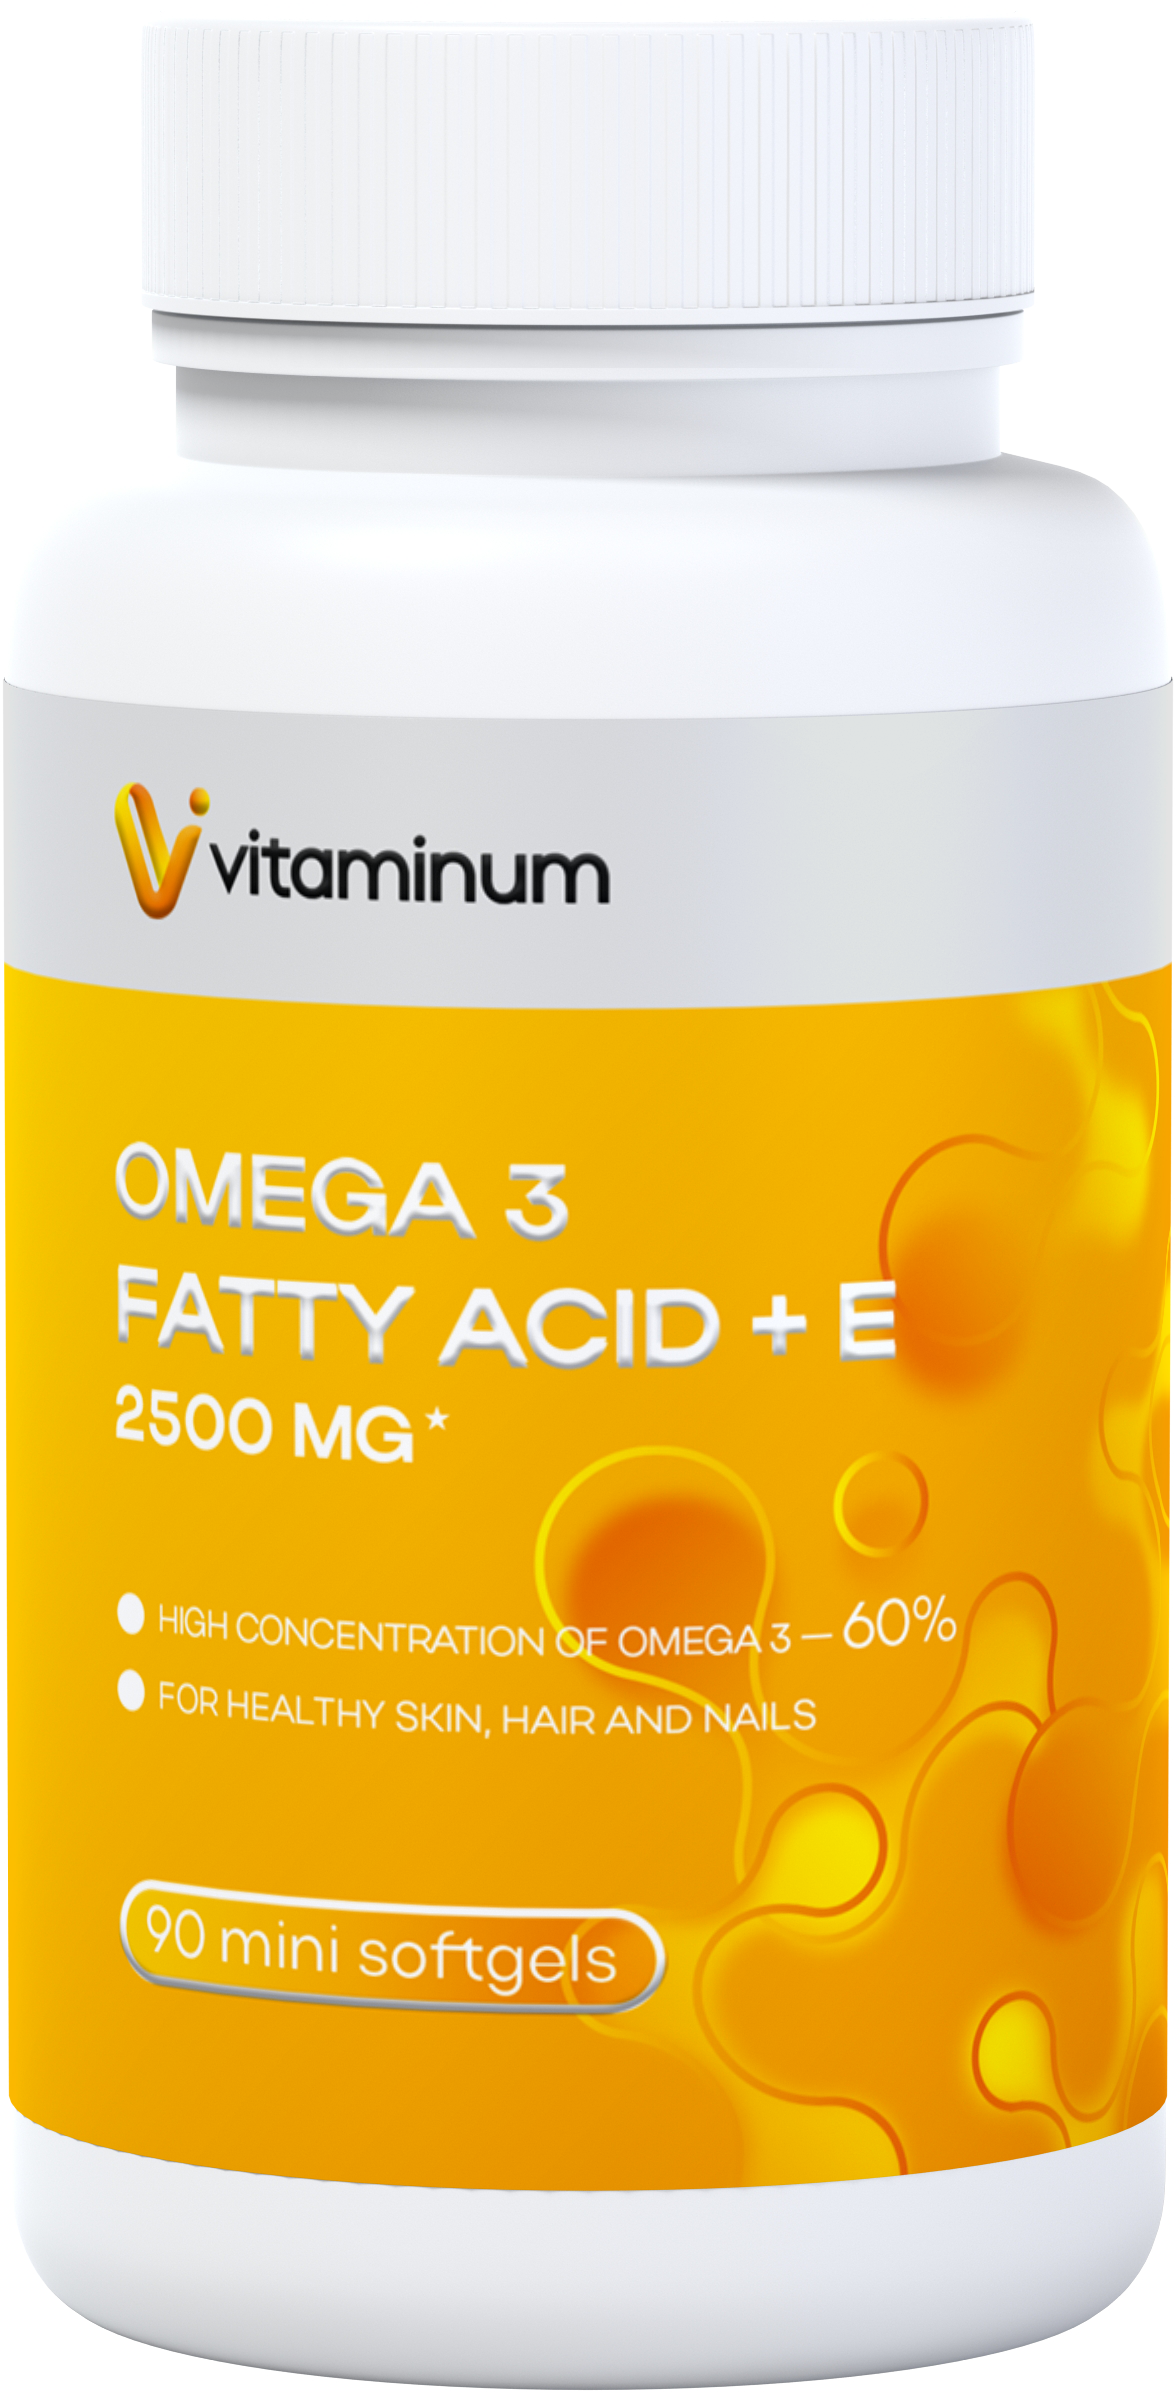  Vitaminum ОМЕГА 3 60% + витамин Е (2500 MG*) 90 капсул 700 мг   в Колпине